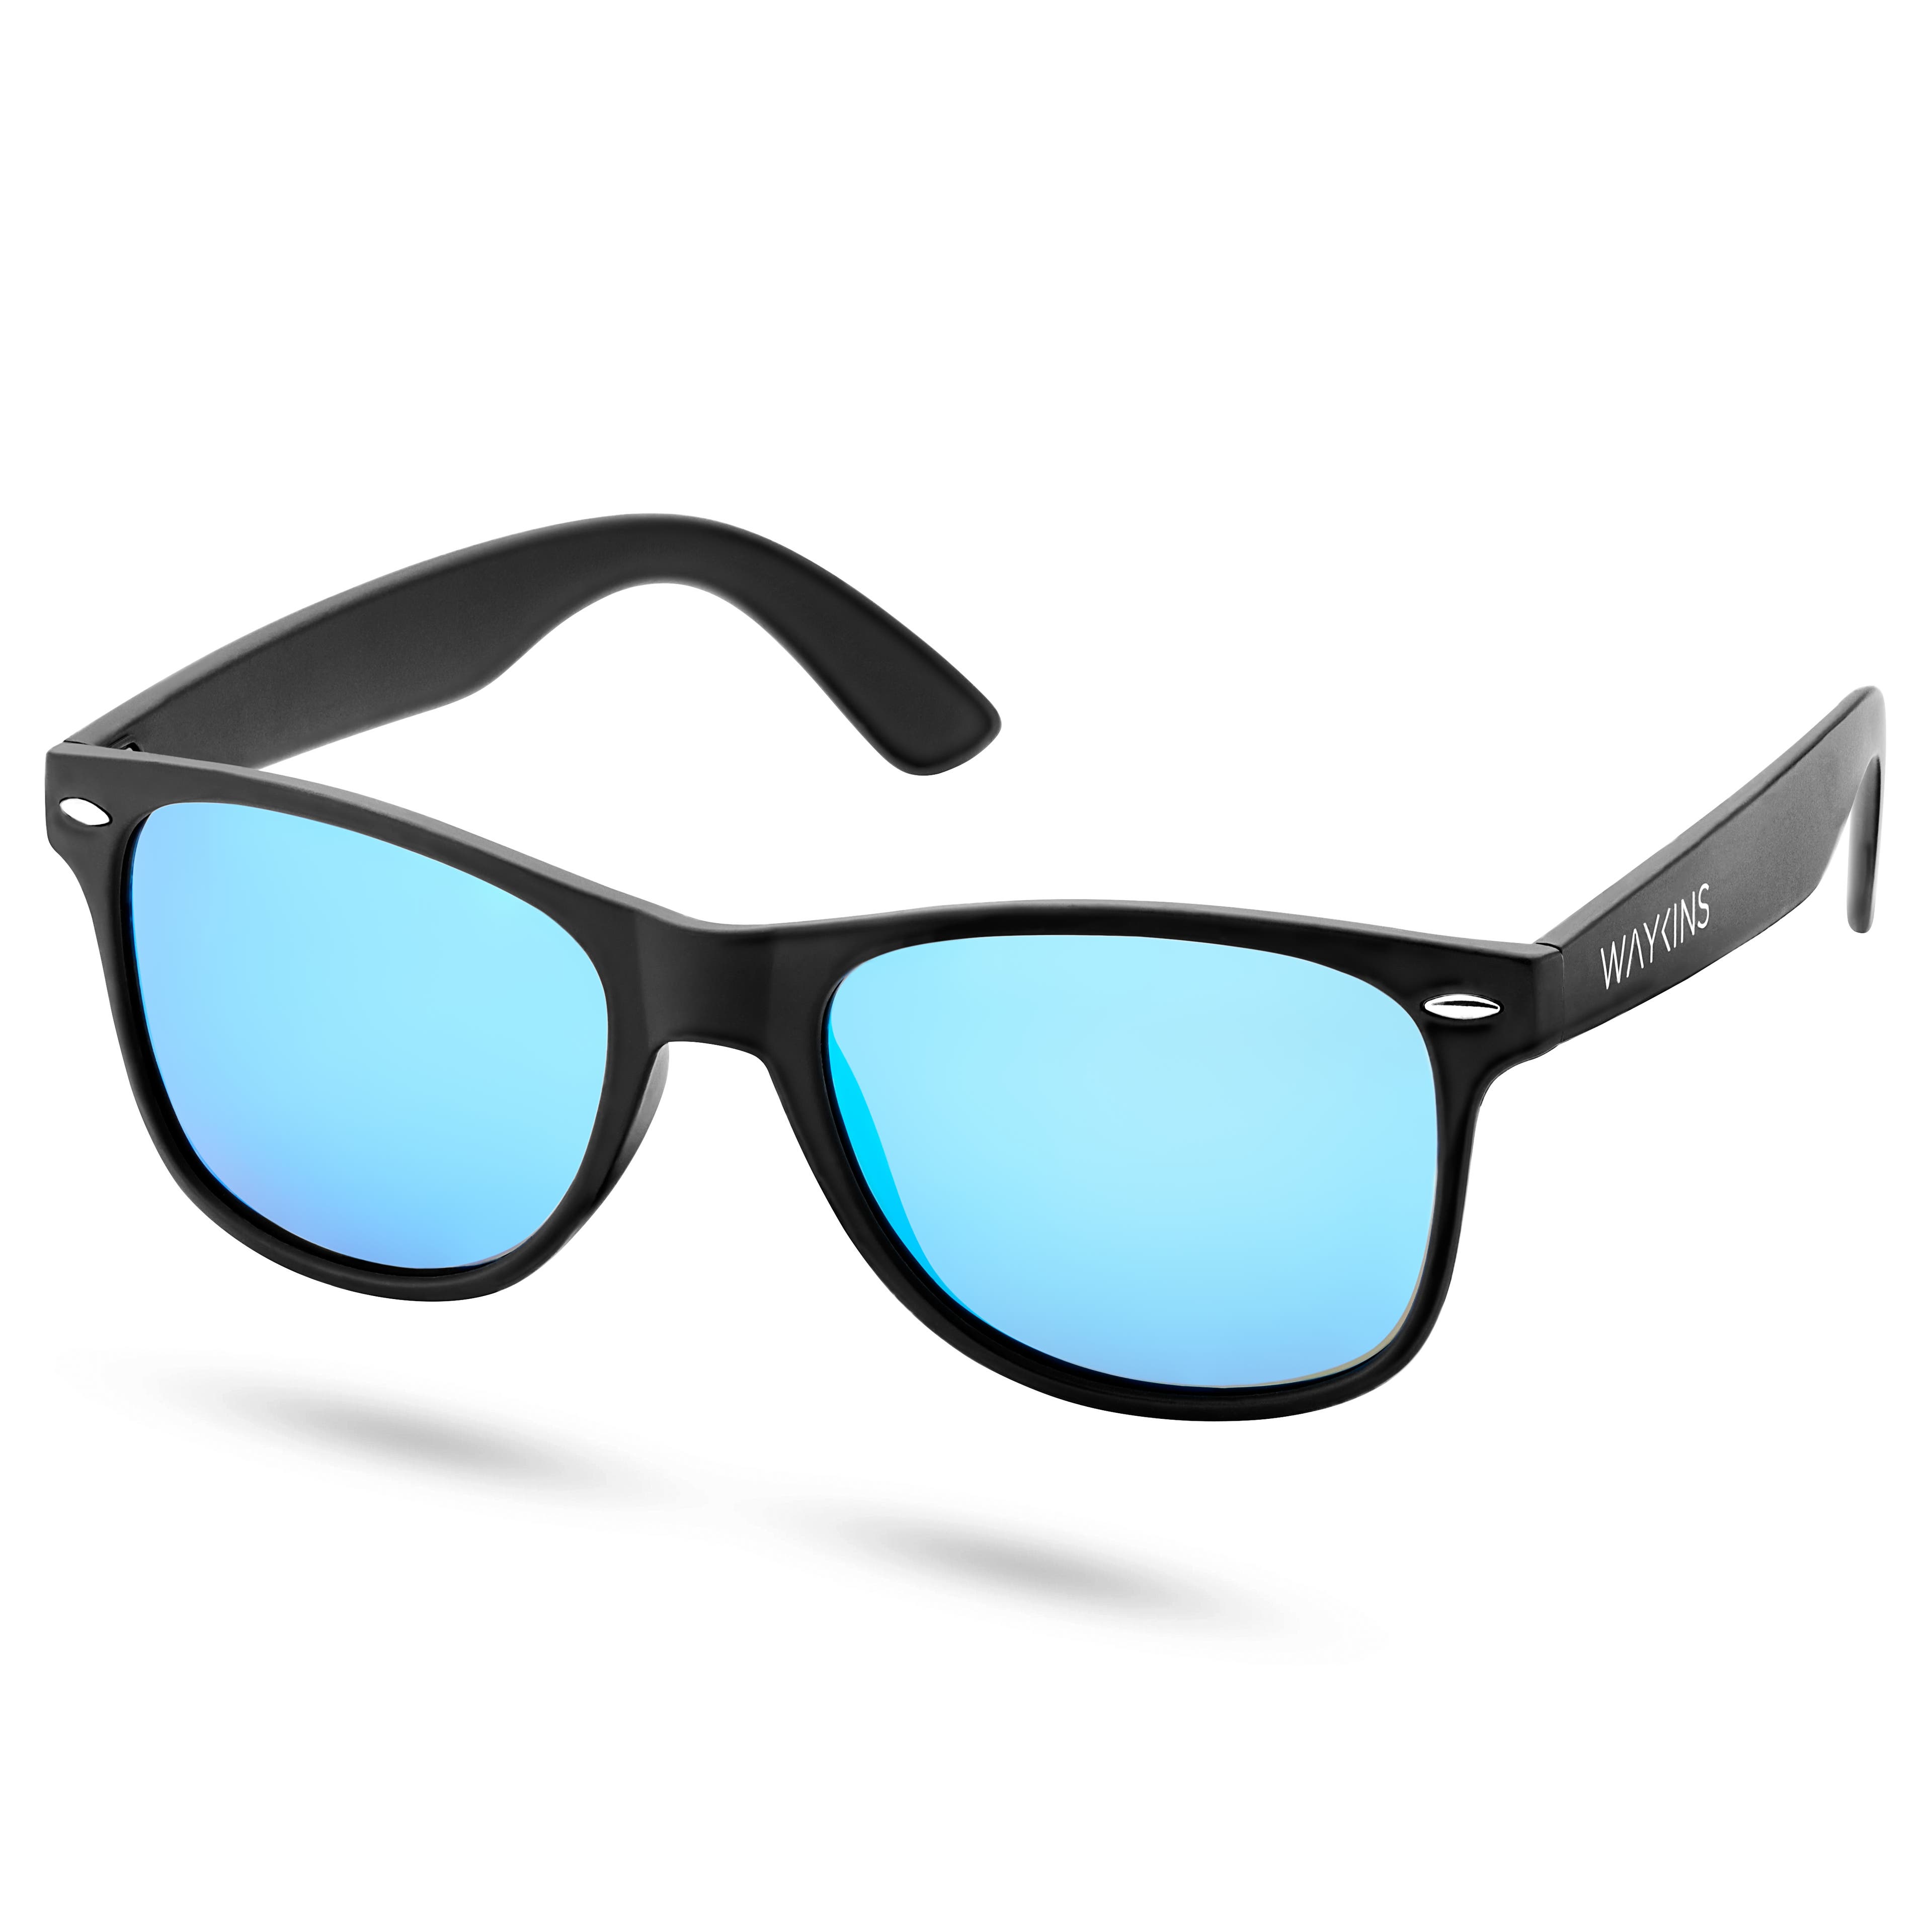 Ochelari de soare retro negri cu lentile polarizate albastre